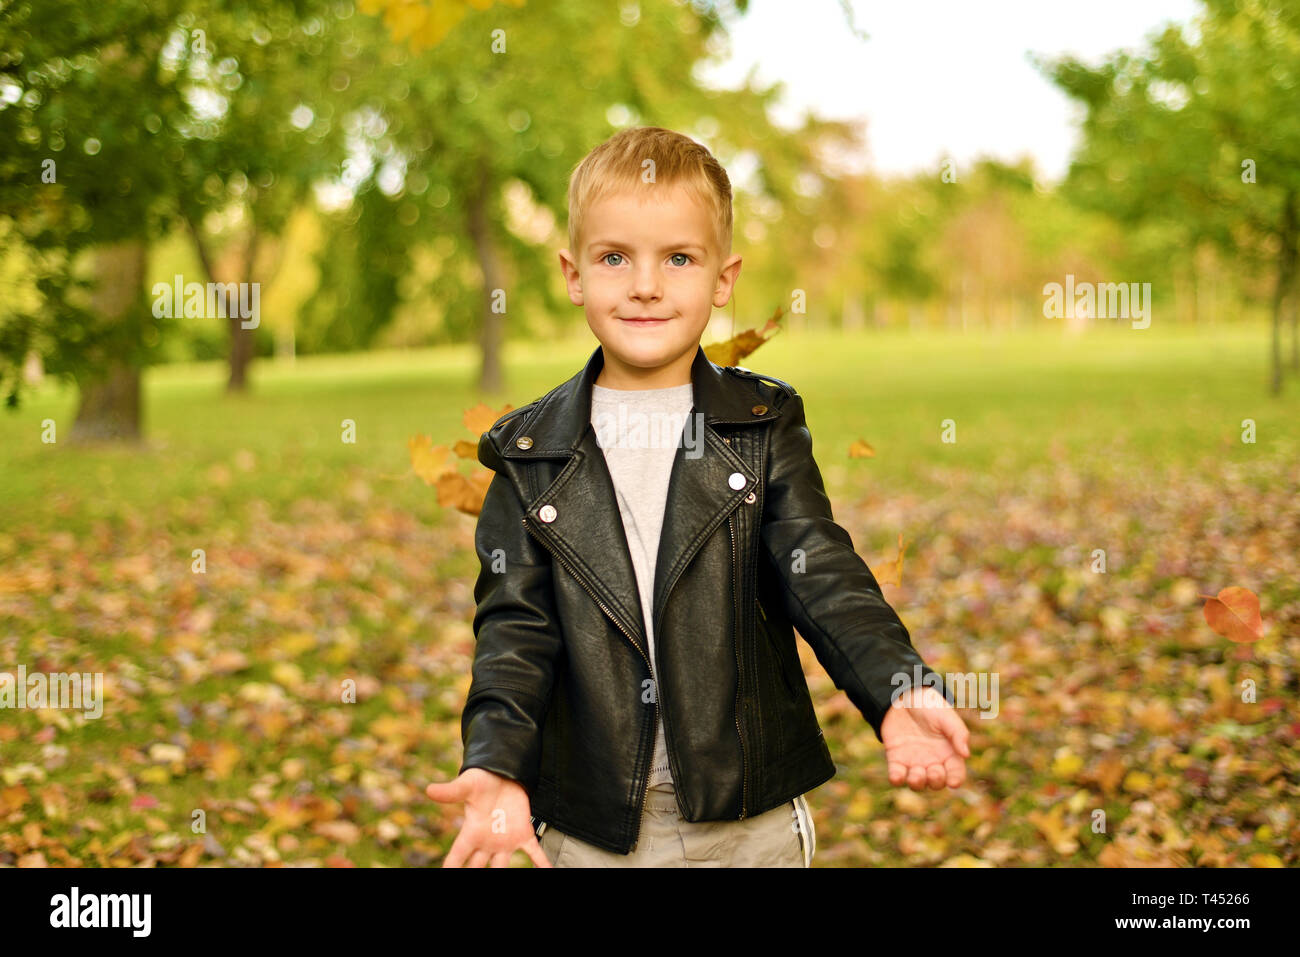 Otoño retrato cute little boy la chaqueta de cuero negro. bebé jugando y divirtiéndose en el parque Fotografía de stock Alamy